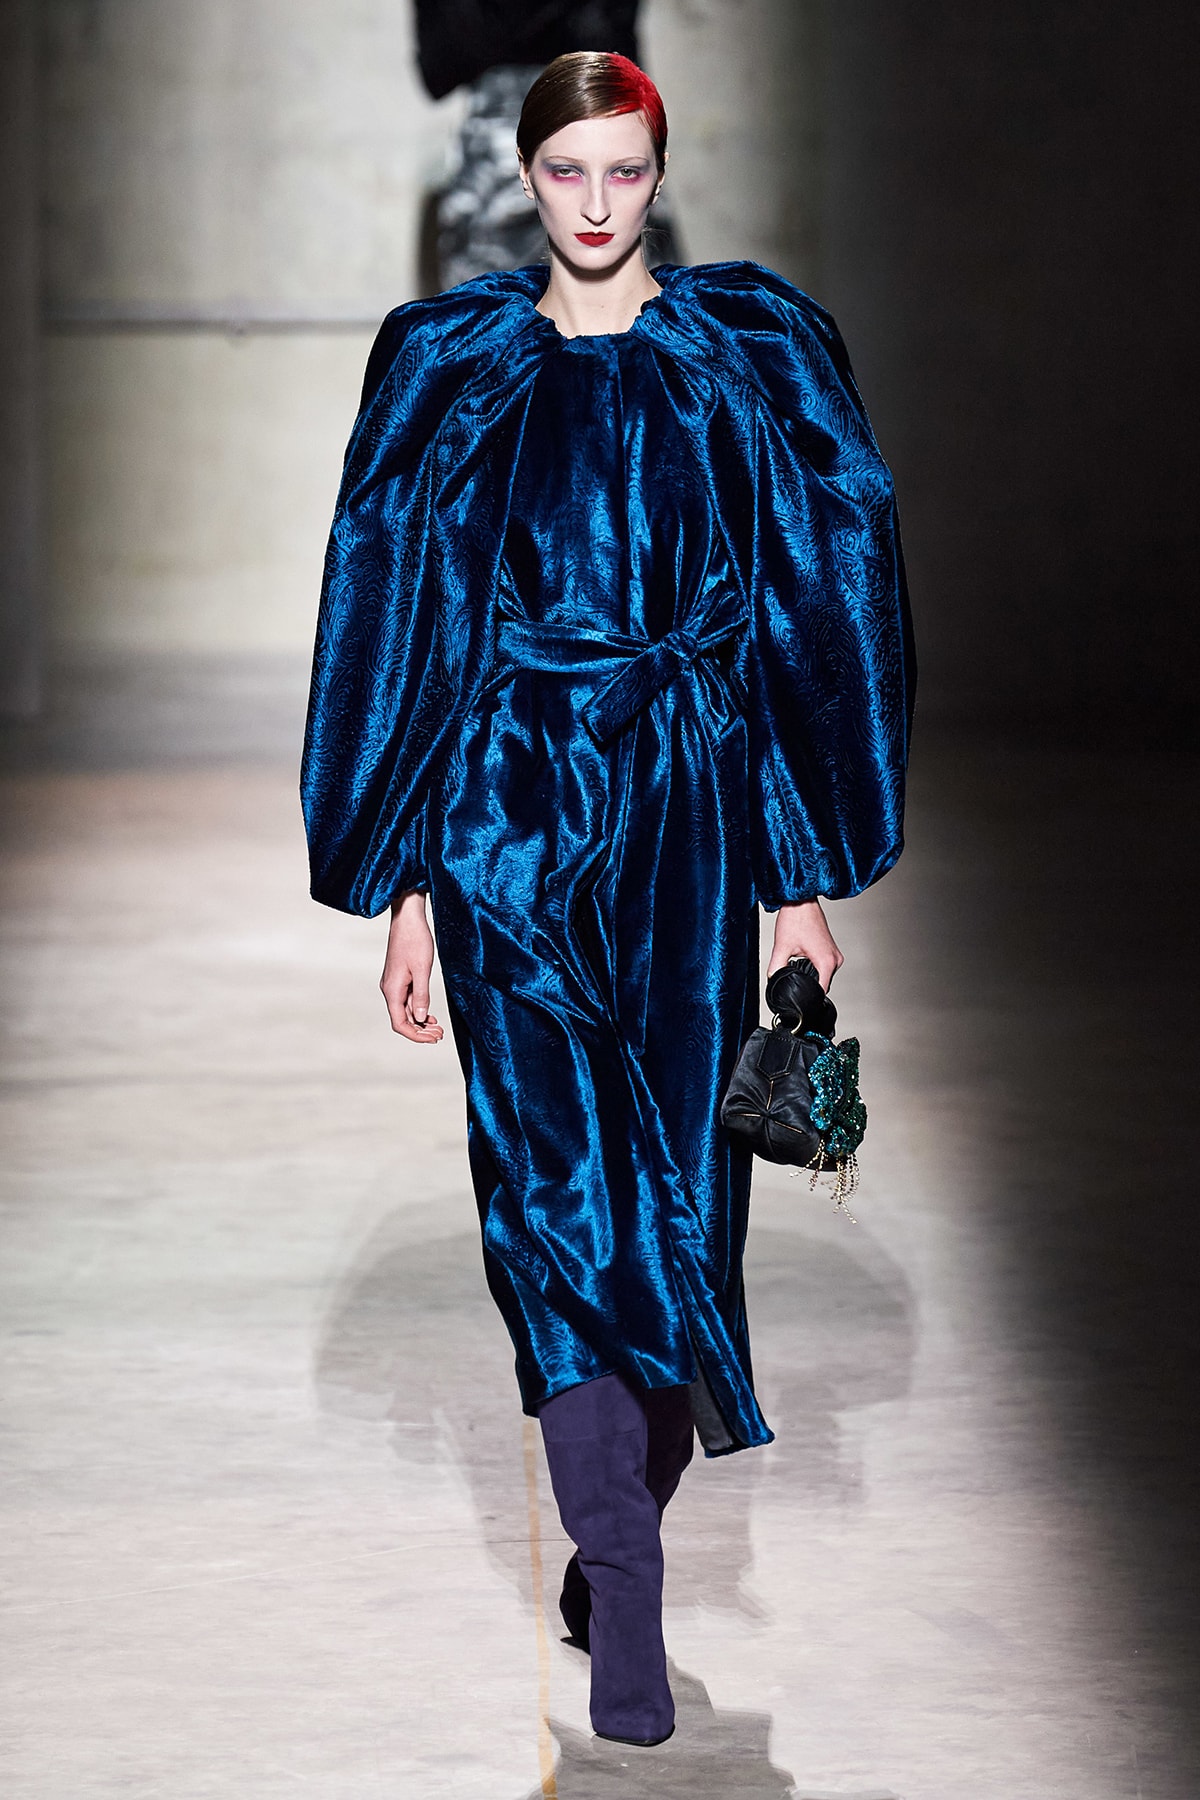 Dries Van Noten Fall/Winter 2020 Collection Runway Show Velvet Dress Blue